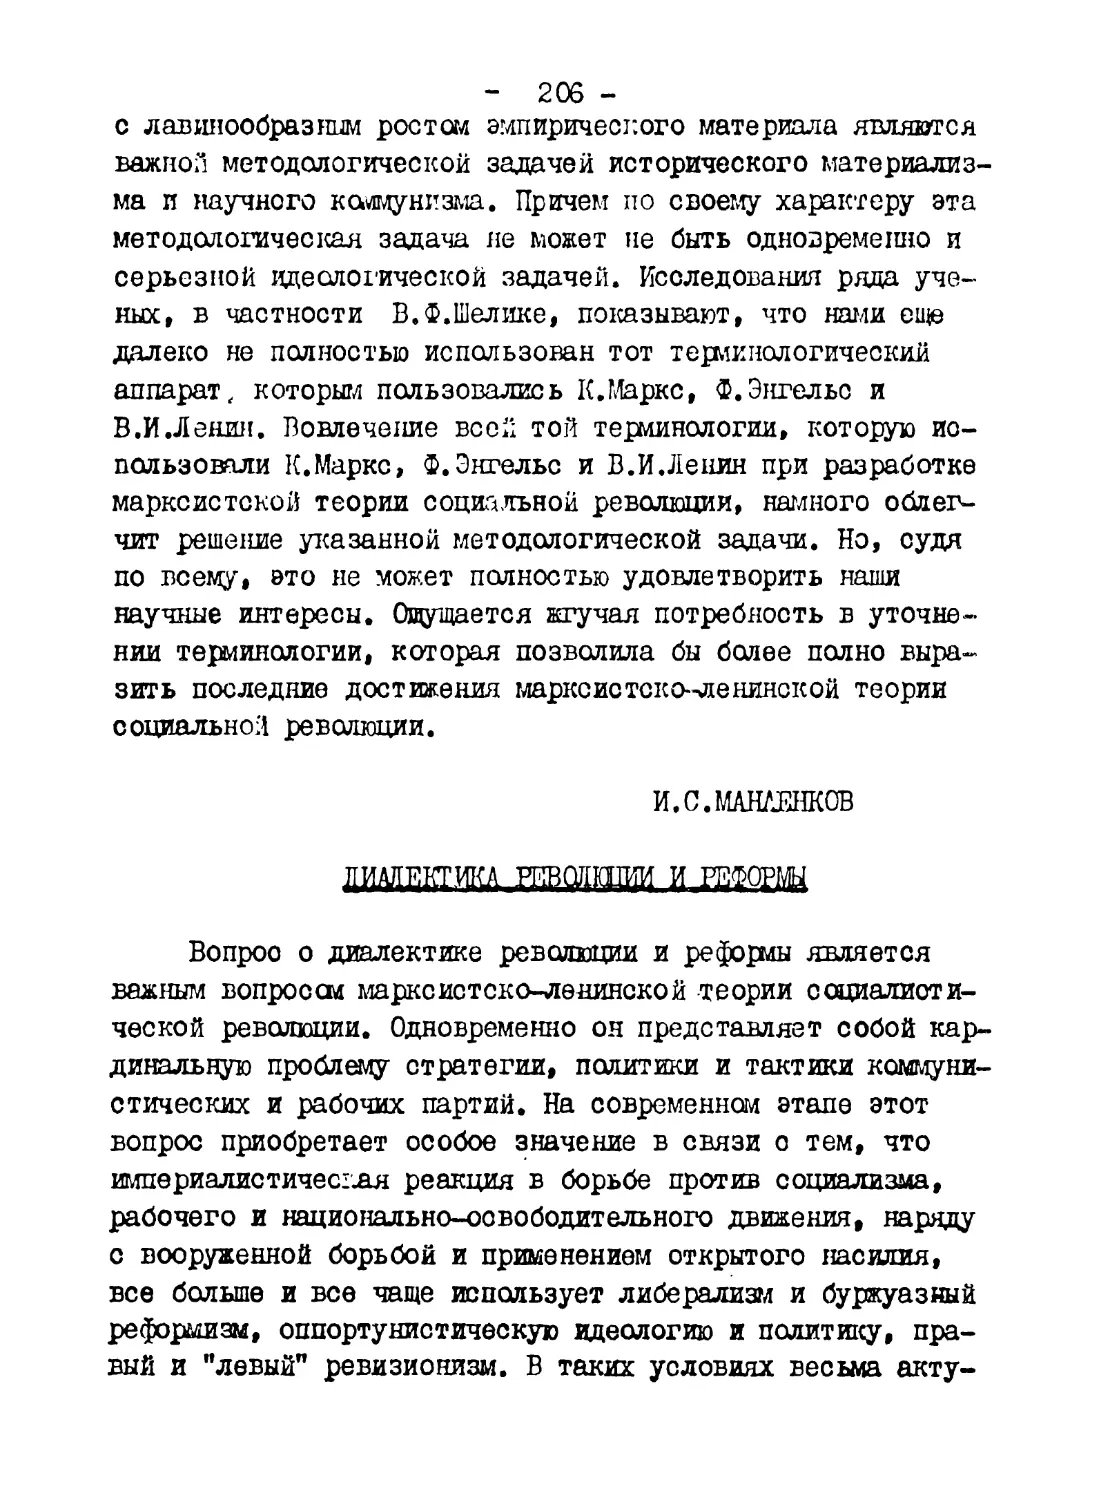 И.С.Манаенков. Диалектика революции и реформы